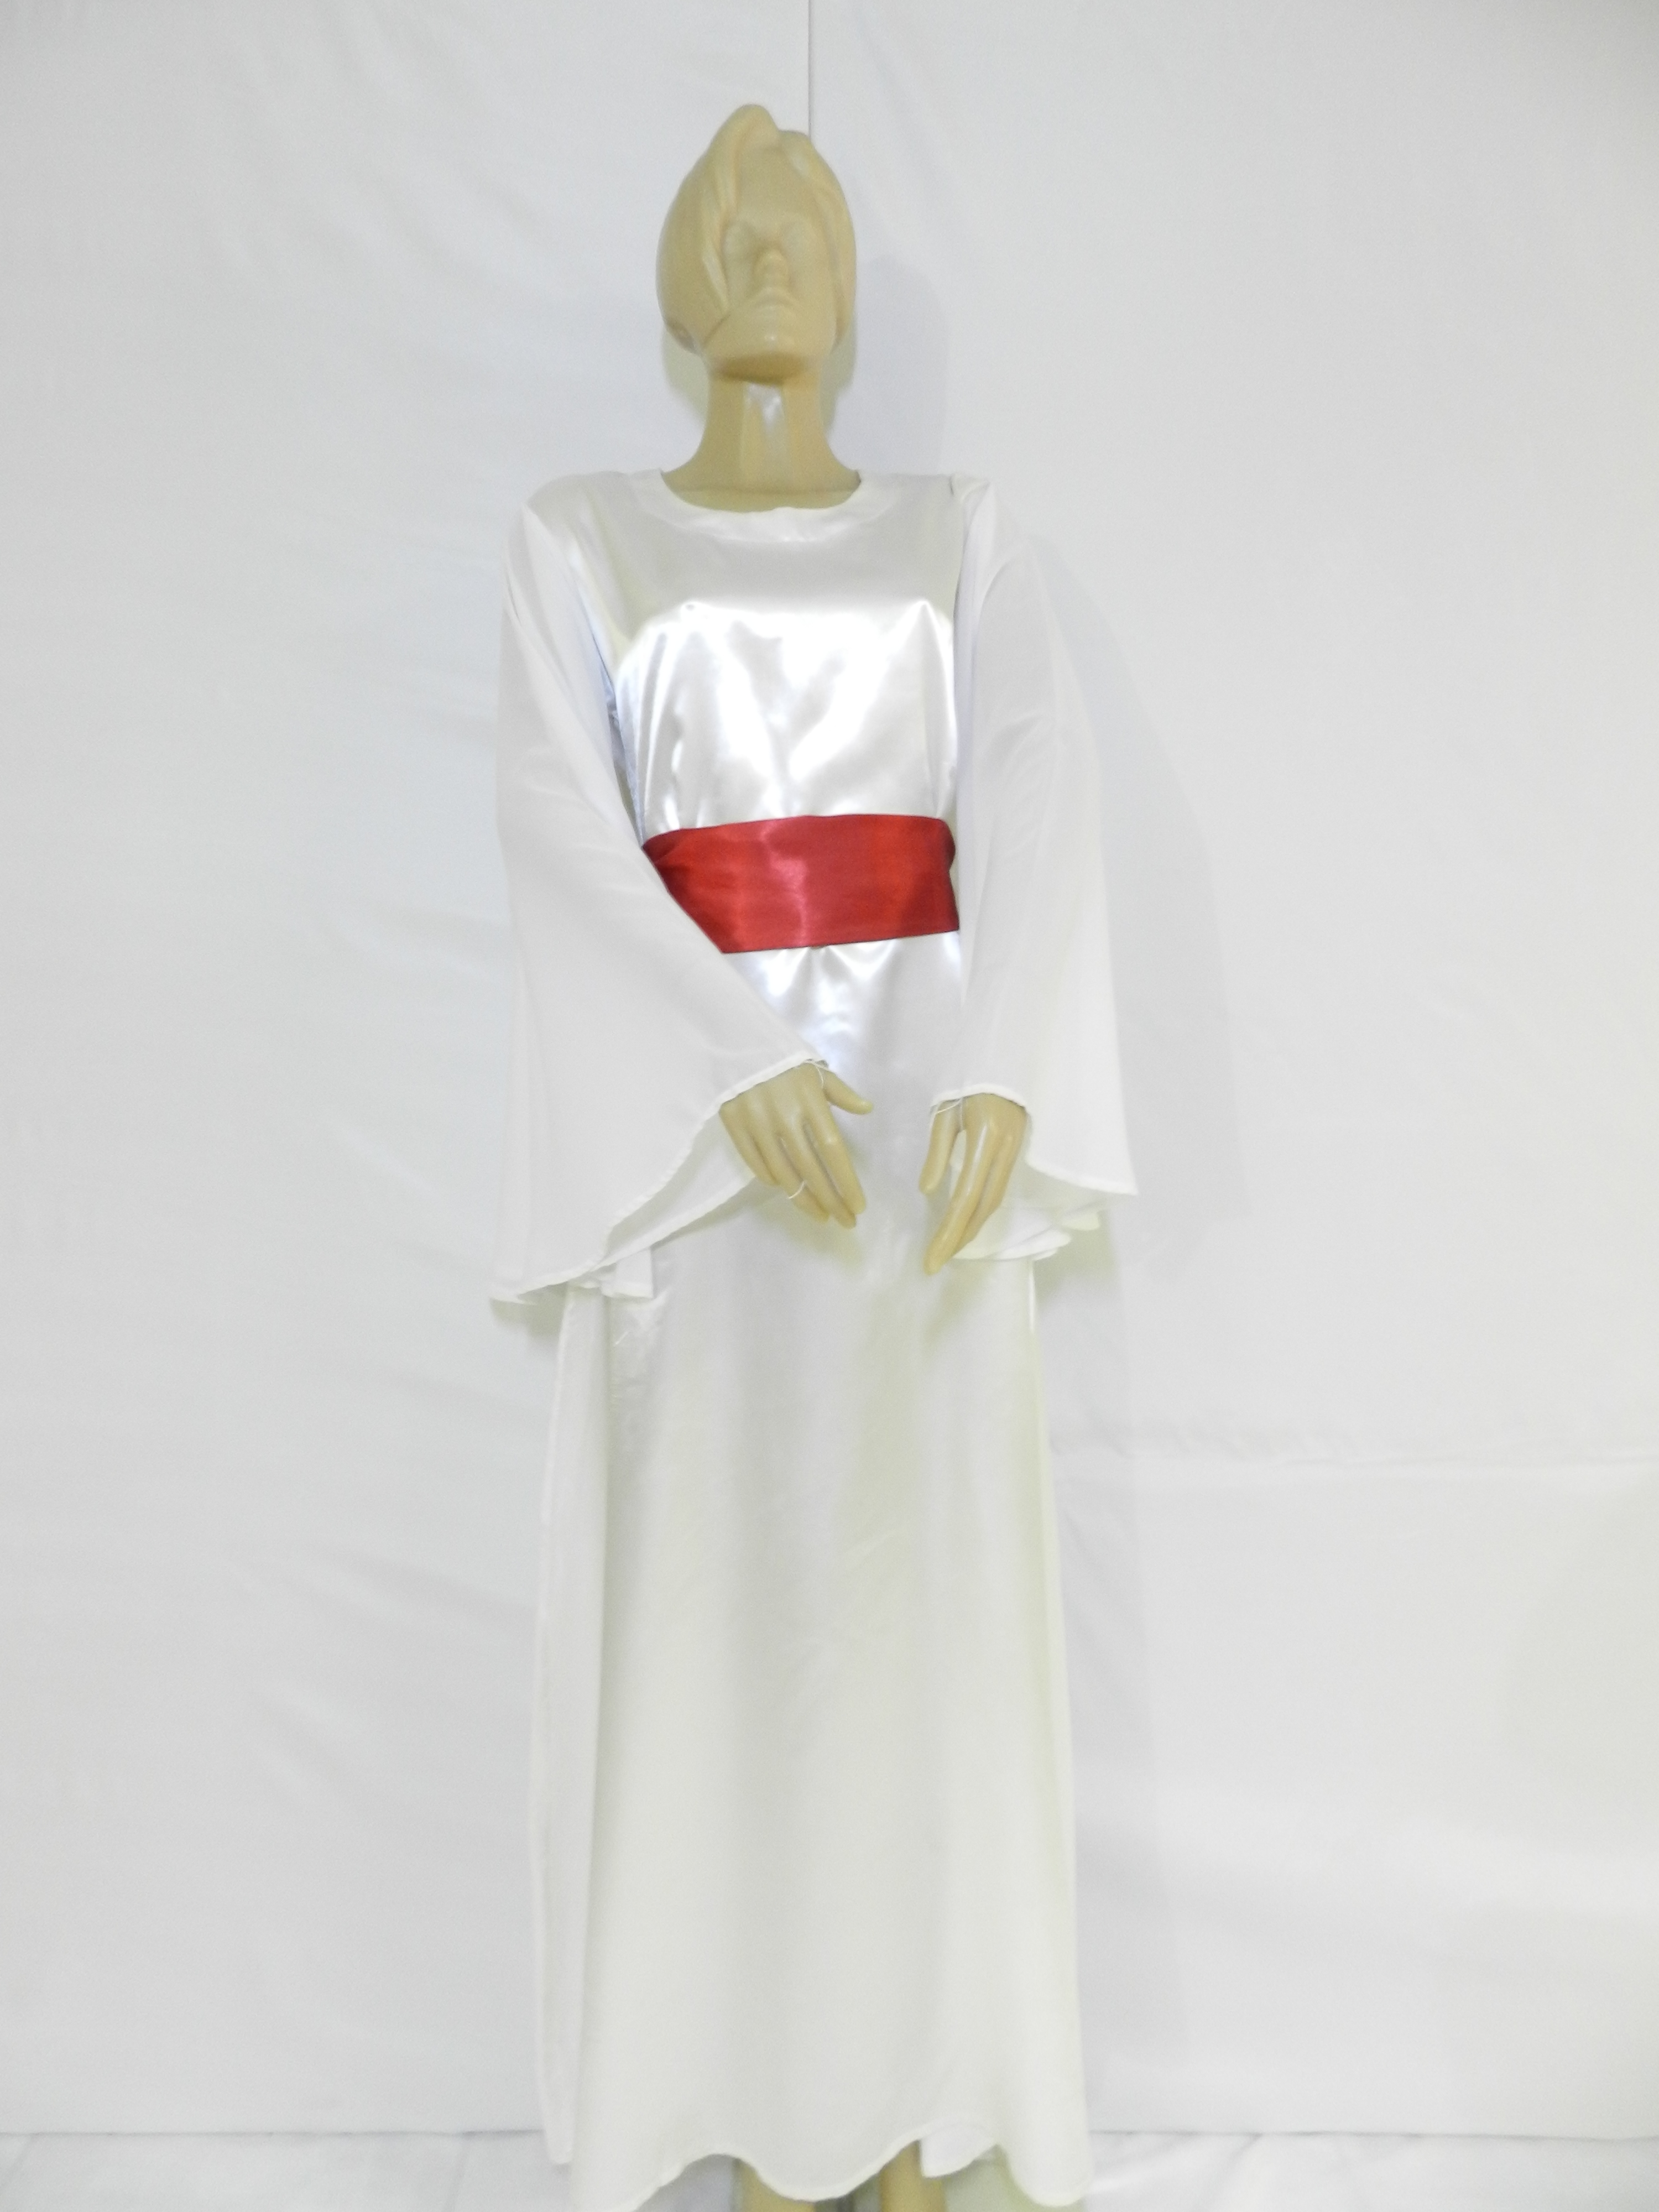 vestido branco com faixa vermelha